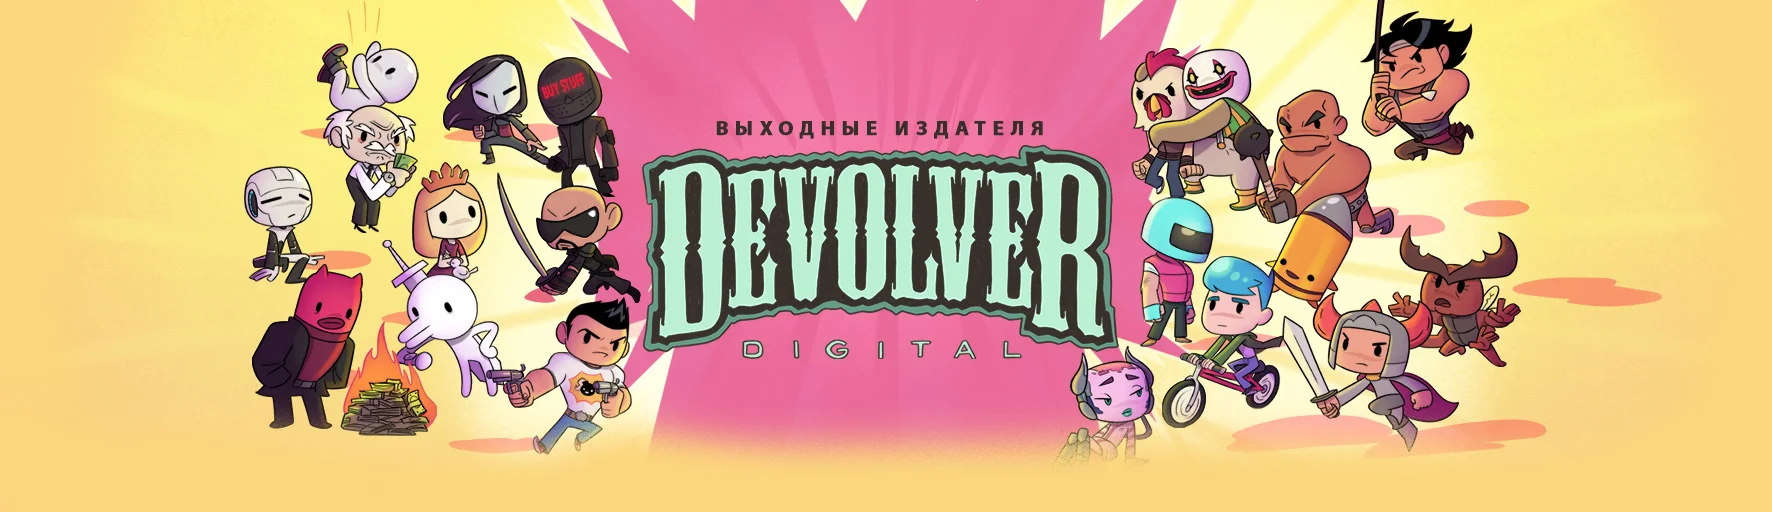 В Steam началась распродажа игр Devolver Digital. Скидки до 90%! - фото 1